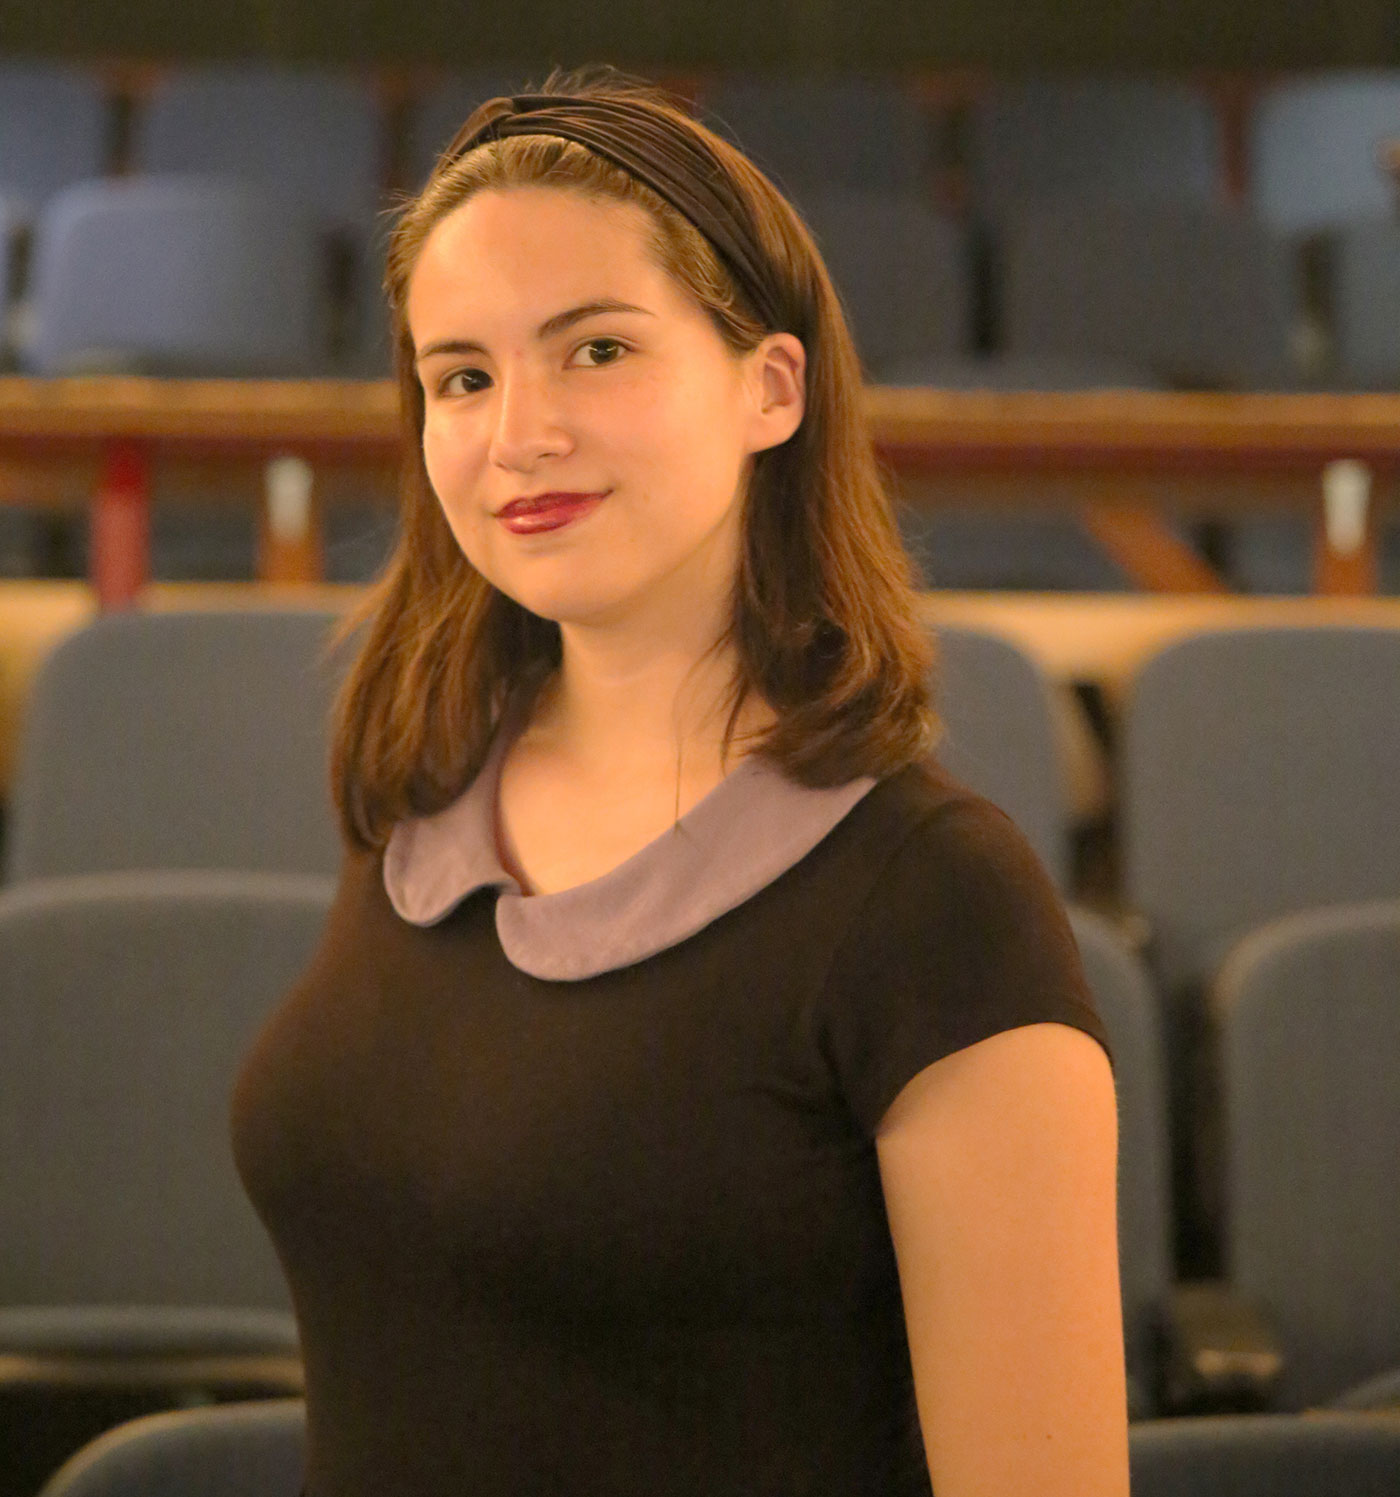 Theatre major Lauren Estrada